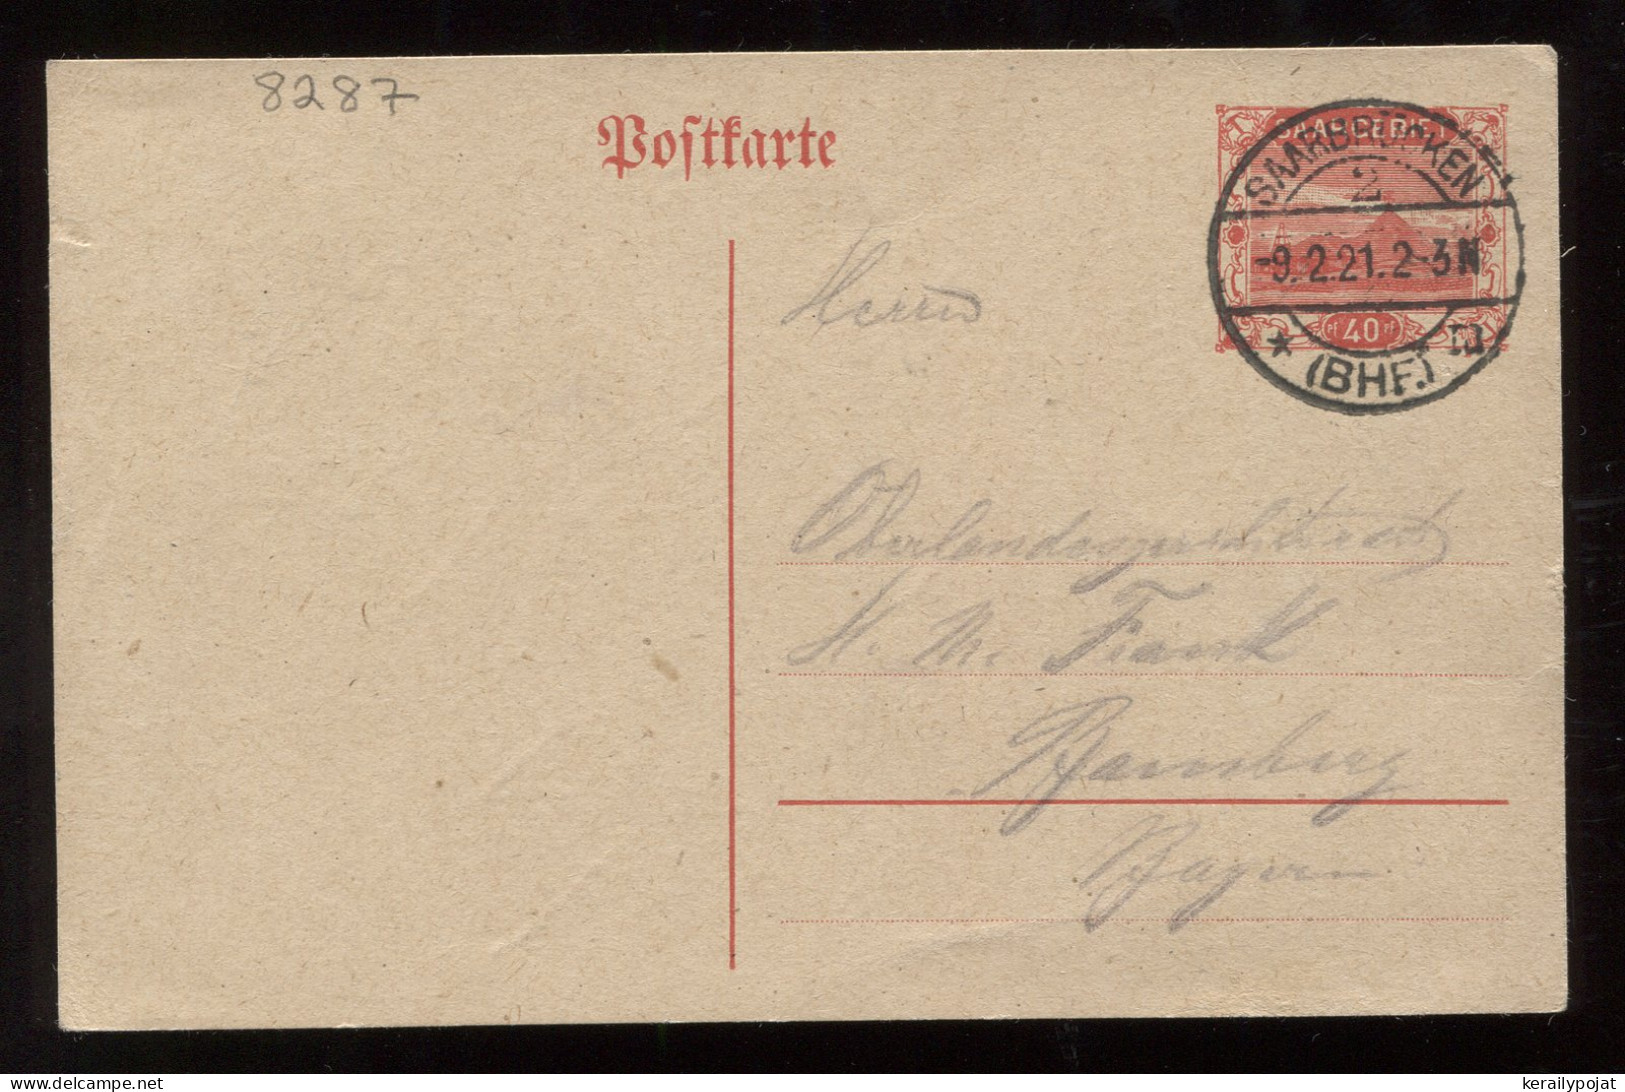 Saargebiet 1921 Saarbrucken 40c Stationery Card__(8287) - Postal Stationery